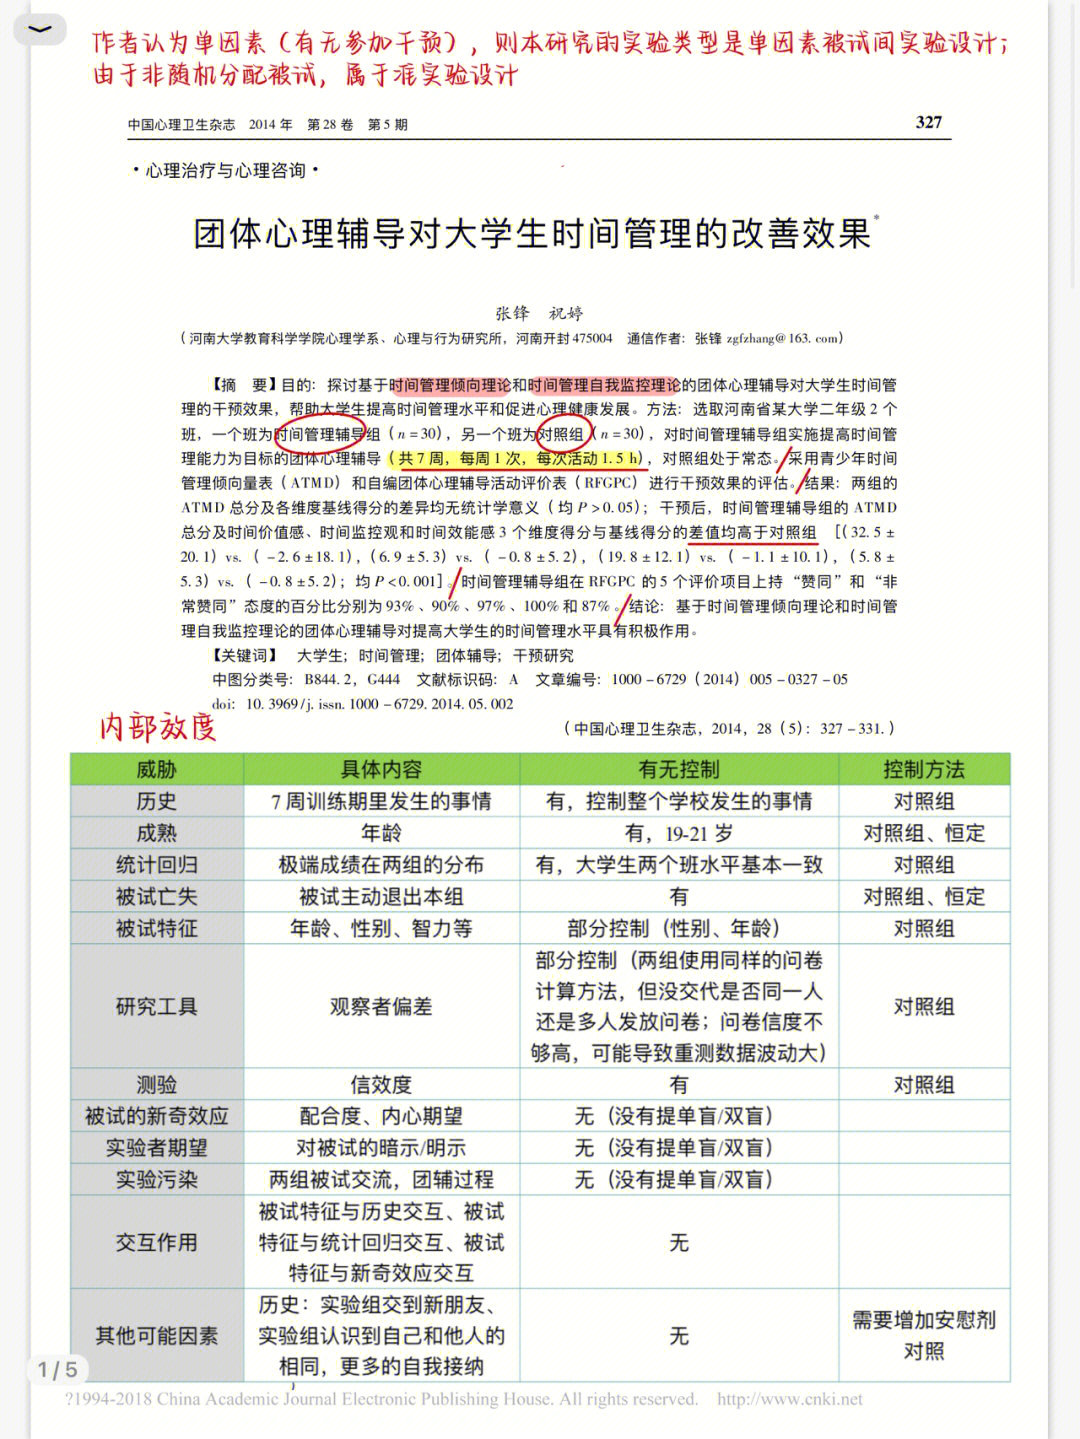 论文题目:团体心理辅导对大学生时间管理的改善效果发表期刊:中国心理